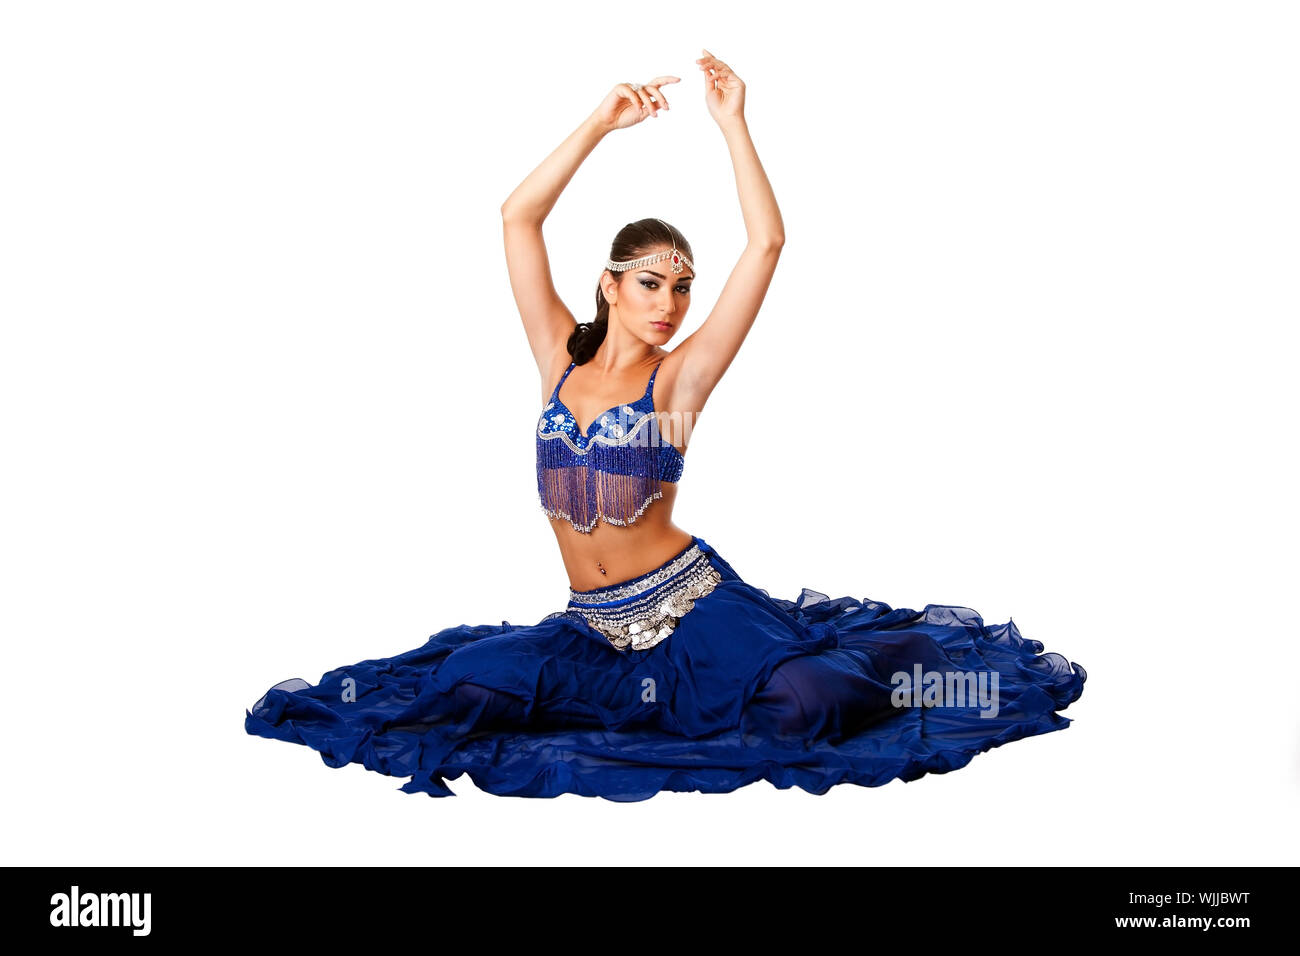 Belle égyptienne Israélien moyen-orientale danseuse du ventre libanaise performer en bleu jupe et soutien-gorge avec des bras dans l'air assis, isolé. Banque D'Images